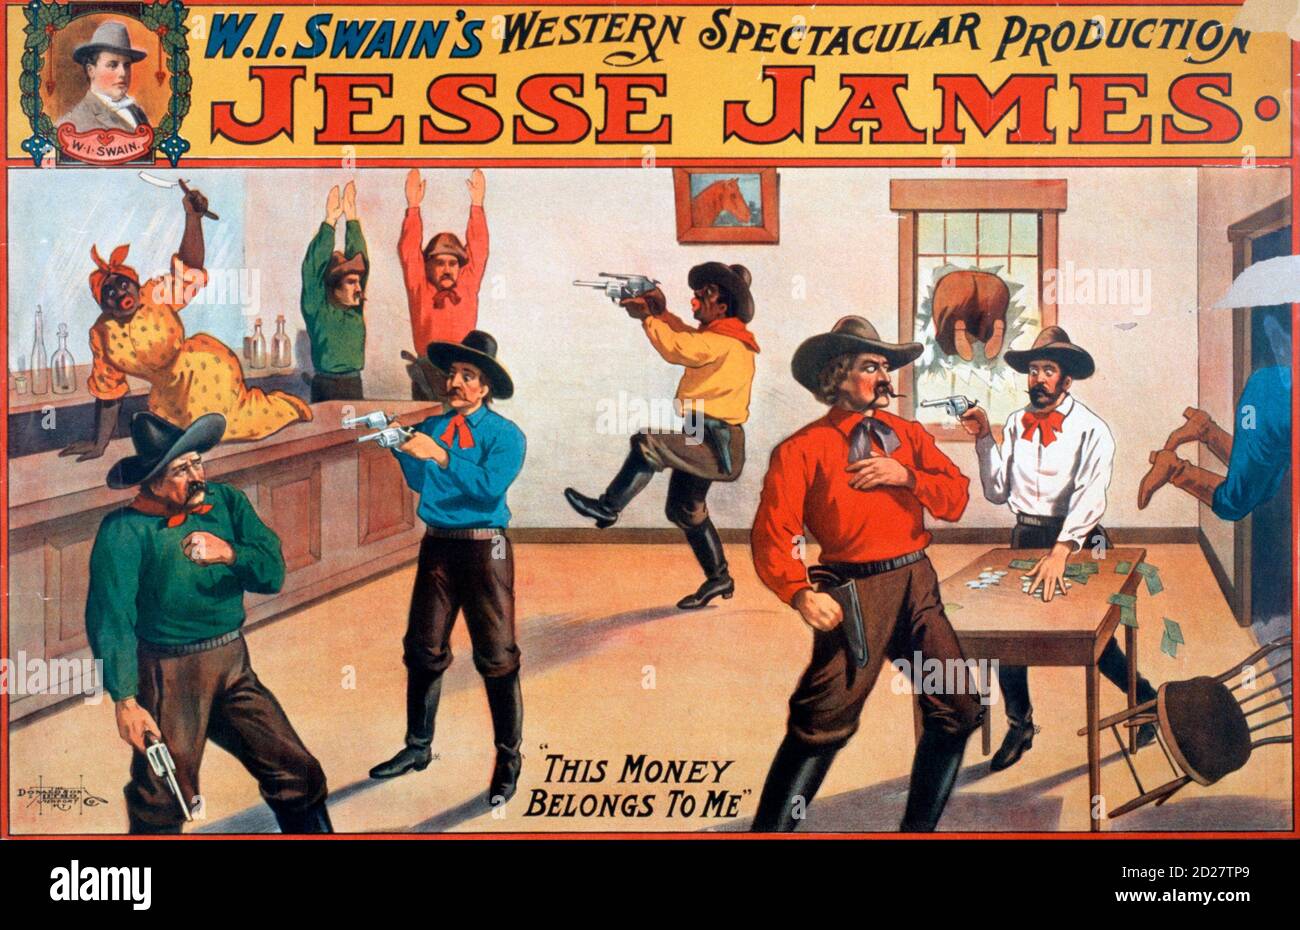 Poster teatrale per W.I. La spettacolare produzione occidentale di Swain con Jesse James, 1880 Foto Stock